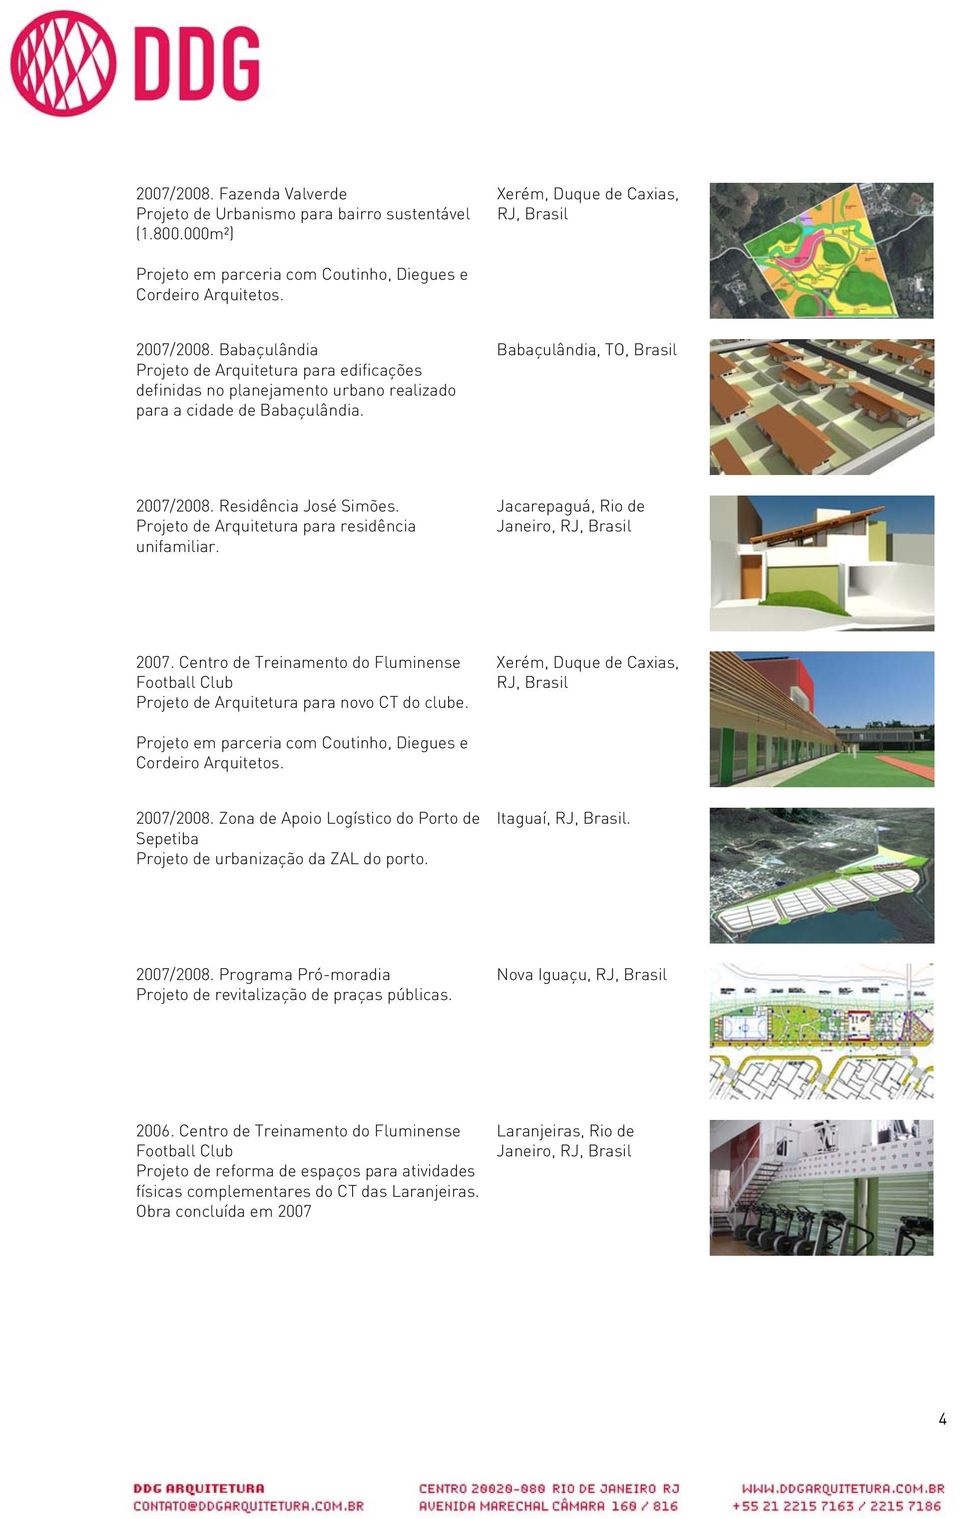 Projeto de Arquitetura para residência unifamiliar. Jacarepaguá, Rio de Janeiro, 2007. Centro de Treinamento do Fluminense Football Club Projeto de Arquitetura para novo CT do clube.